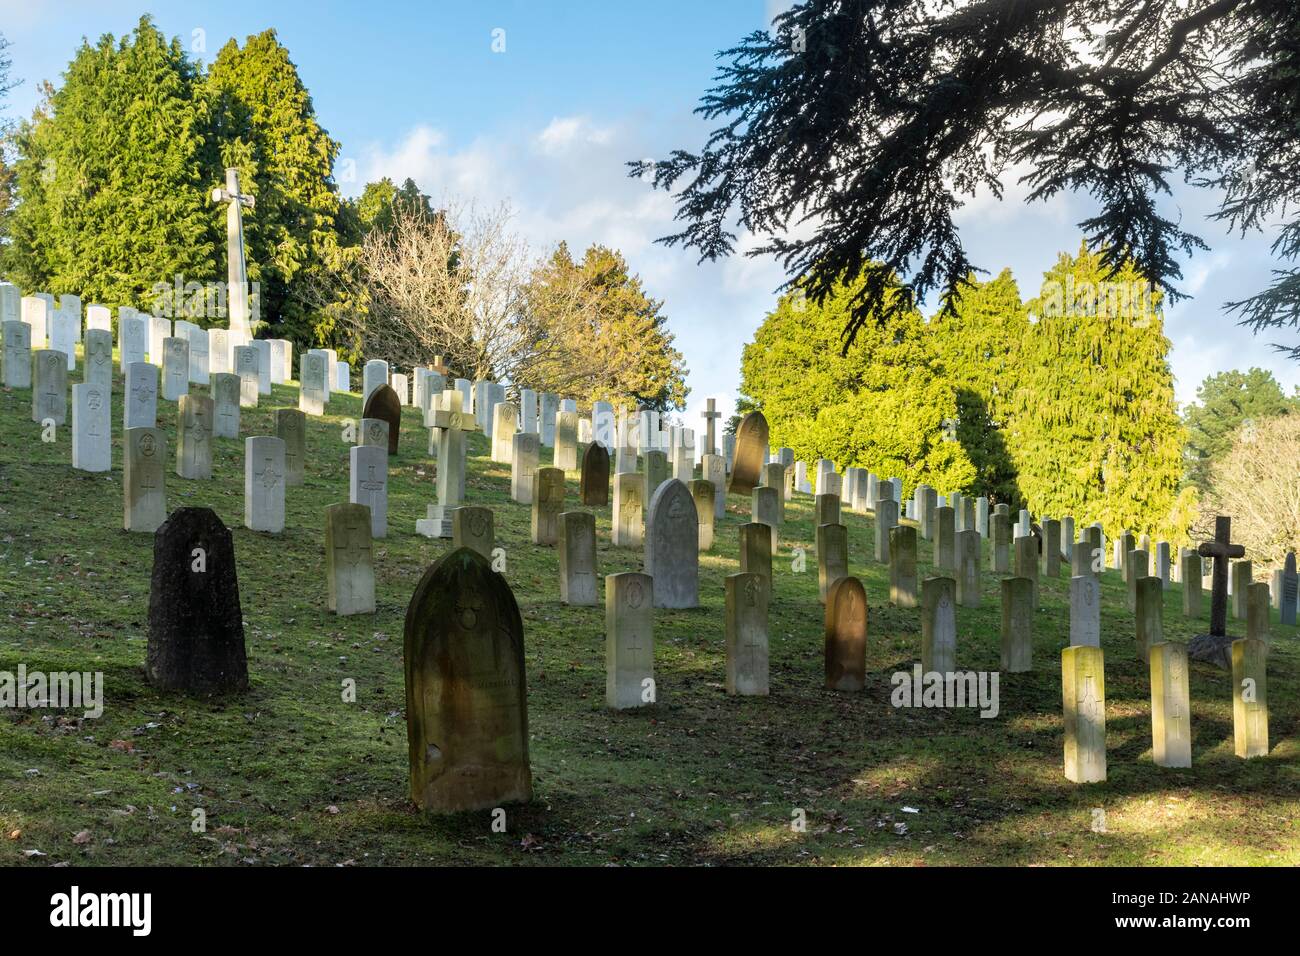 Cimetière militaire d'Aldershot avec les tombes de militaires du Commonwealth britannique et les femmes et, Hampshire, Royaume-Uni. Première guerre mondiale, tombes et Croix du sacrifice Banque D'Images